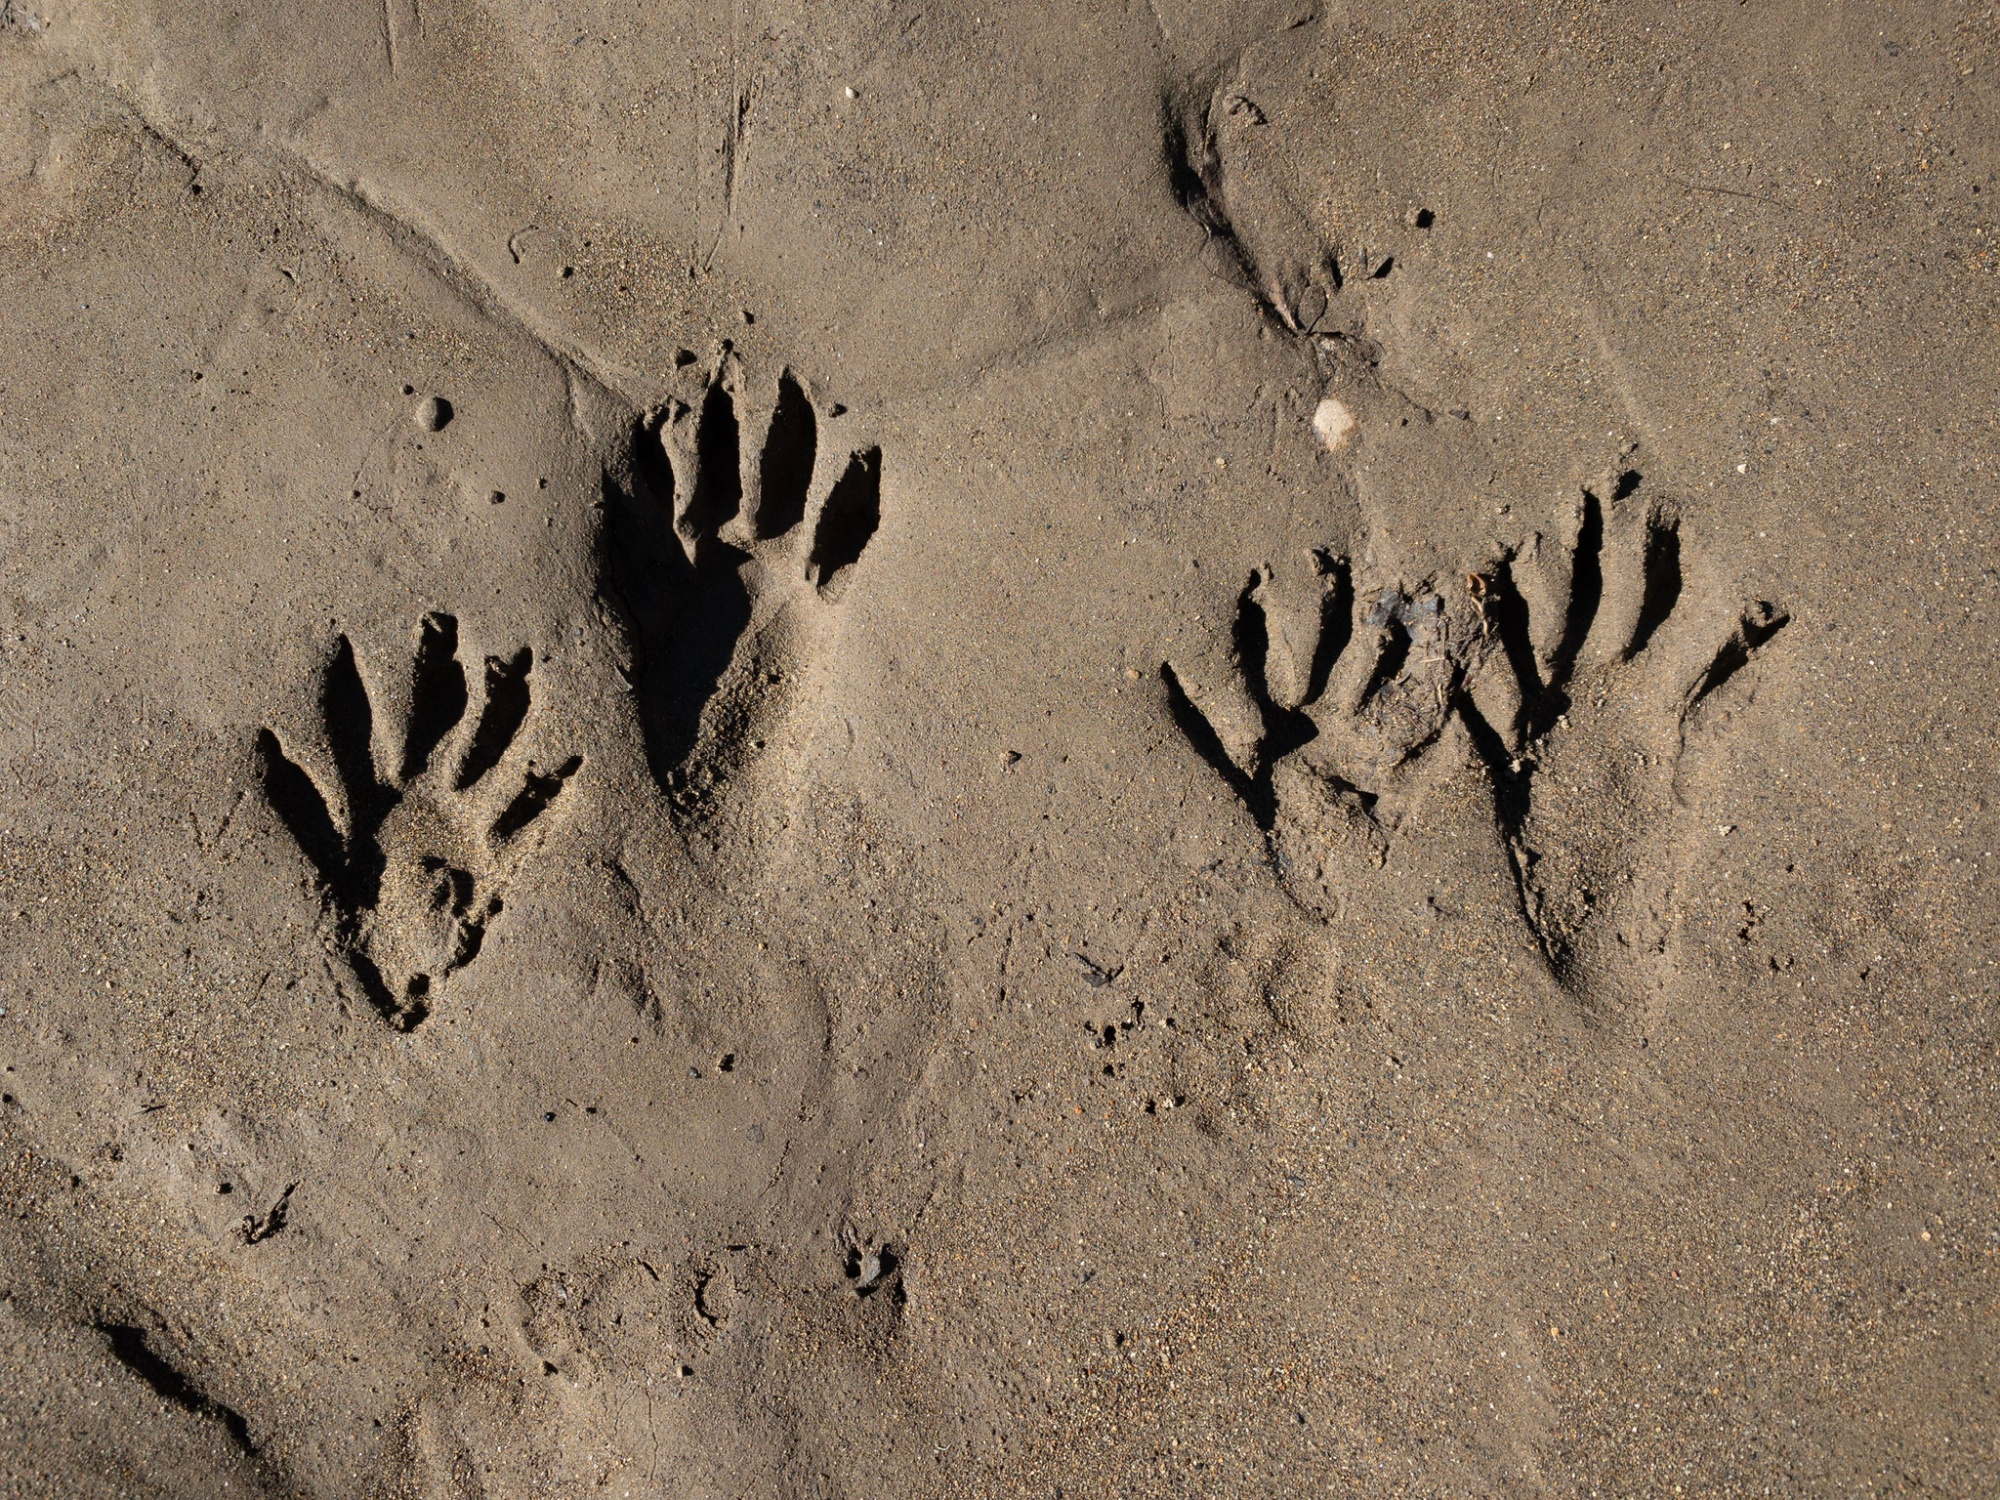 Raccoon tracks look like hands in mud.